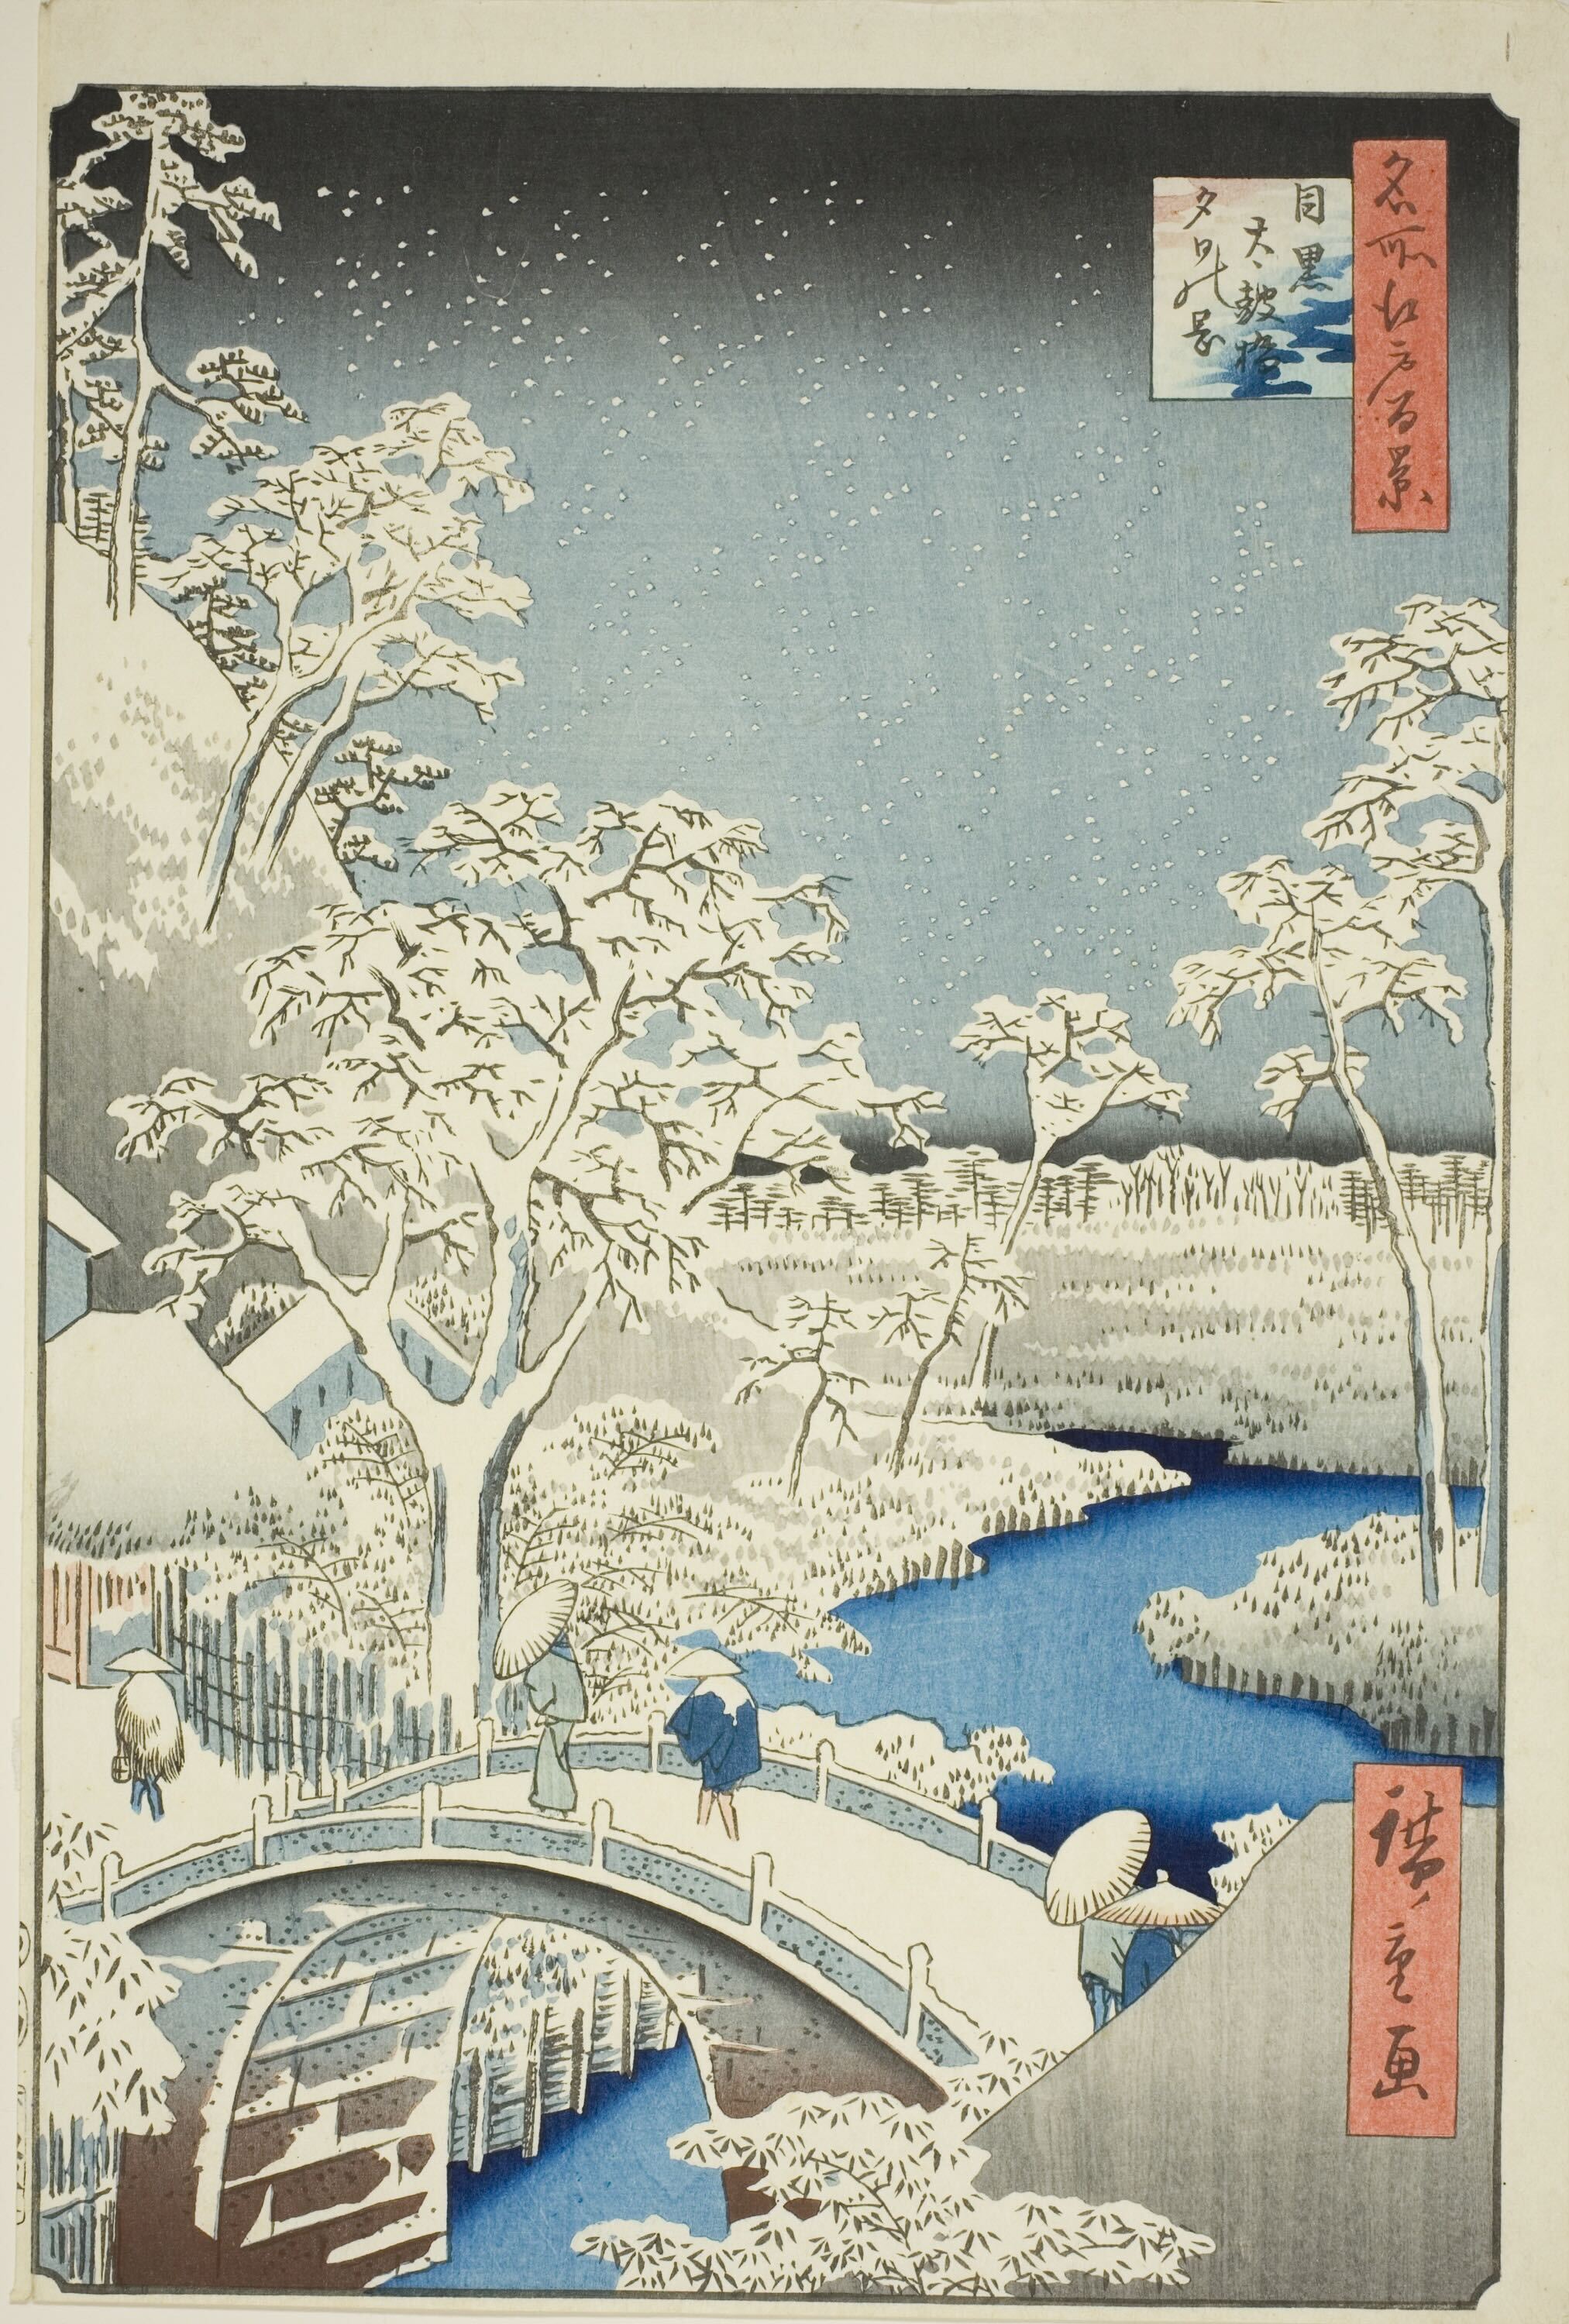 Taiko Brücke, Meguro, an einem verschneiten Abend by  Hiroshige - 1857 - 36,2 x 23,5 cm Art Institute of Chicago